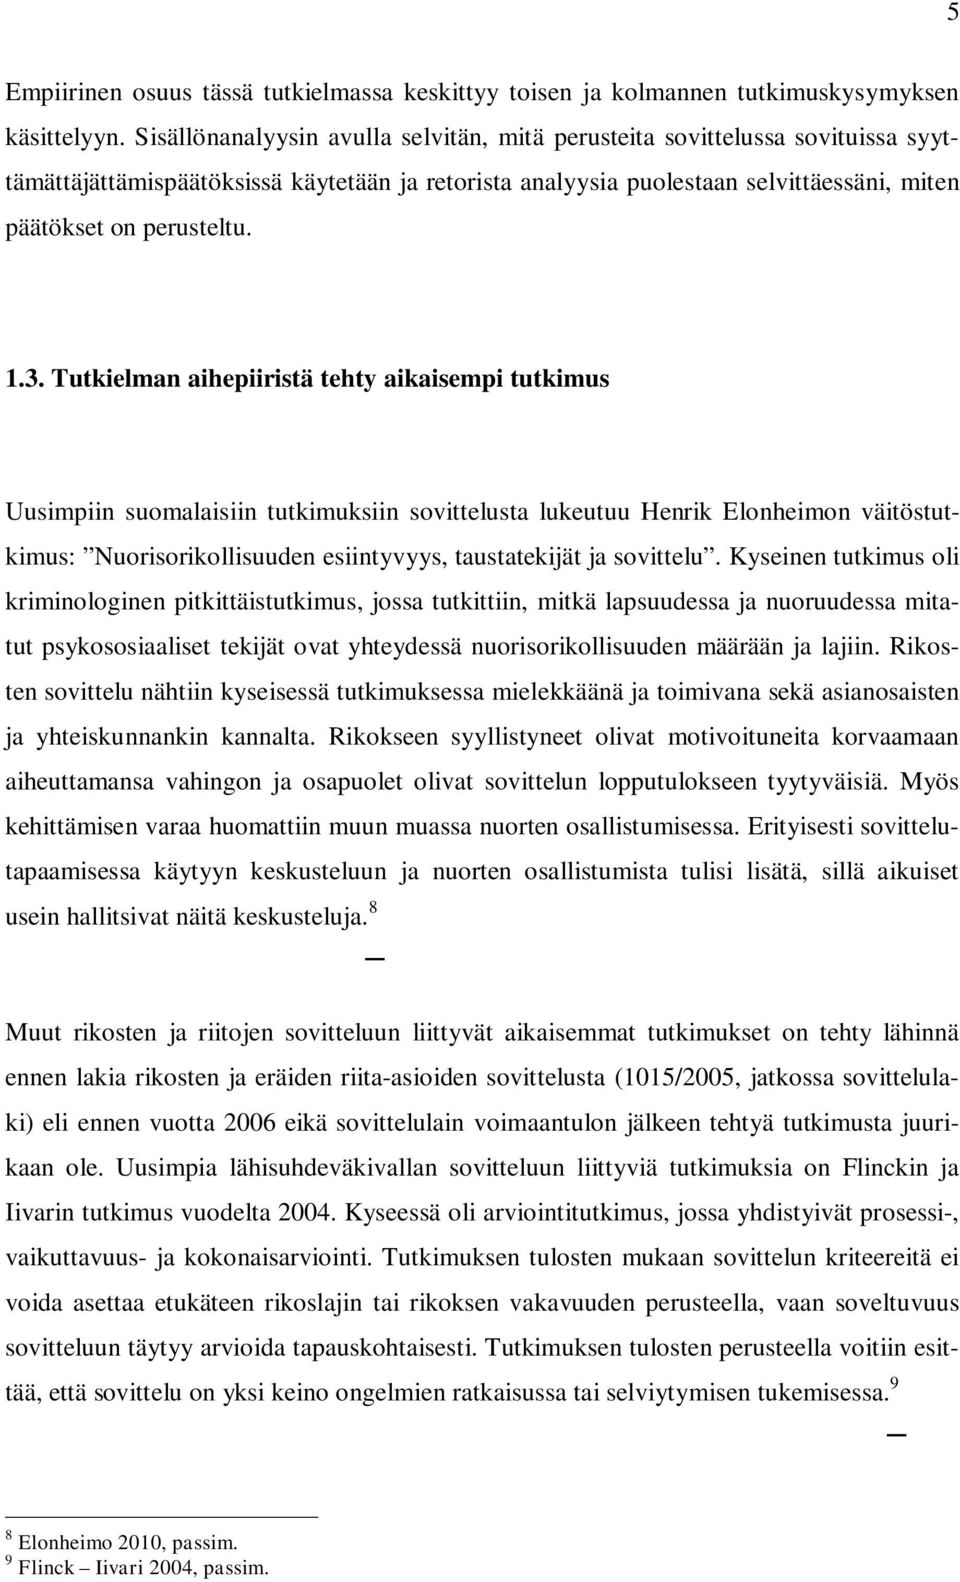 3. Tutkielman aihepiiristä tehty aikaisempi tutkimus Uusimpiin suomalaisiin tutkimuksiin sovittelusta lukeutuu Henrik Elonheimon väitöstutkimus: Nuorisorikollisuuden esiintyvyys, taustatekijät ja